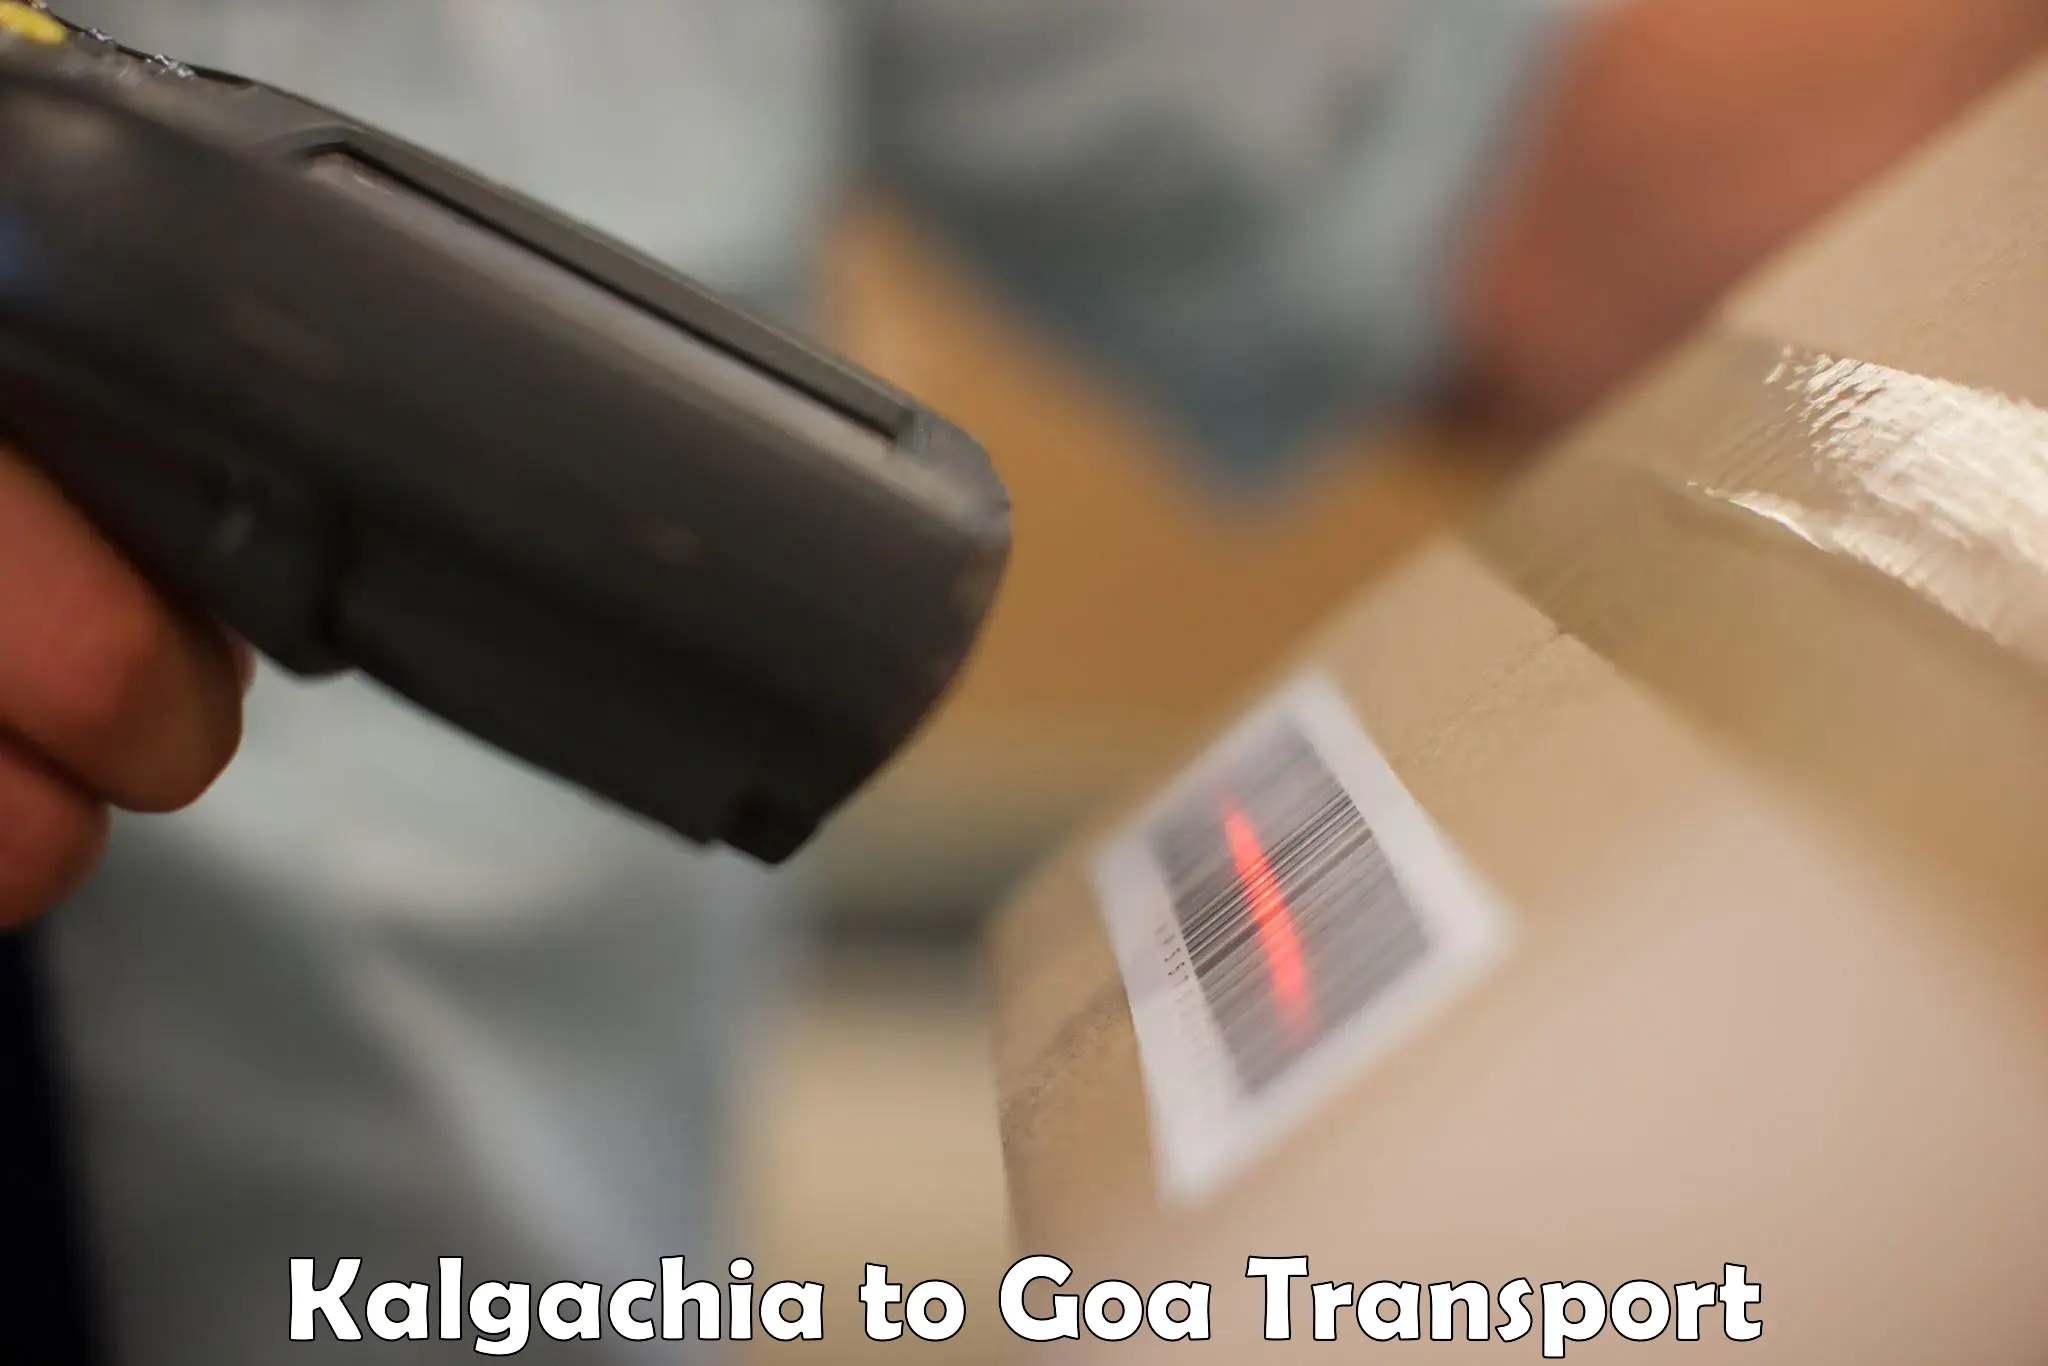 Express transport services Kalgachia to Goa University